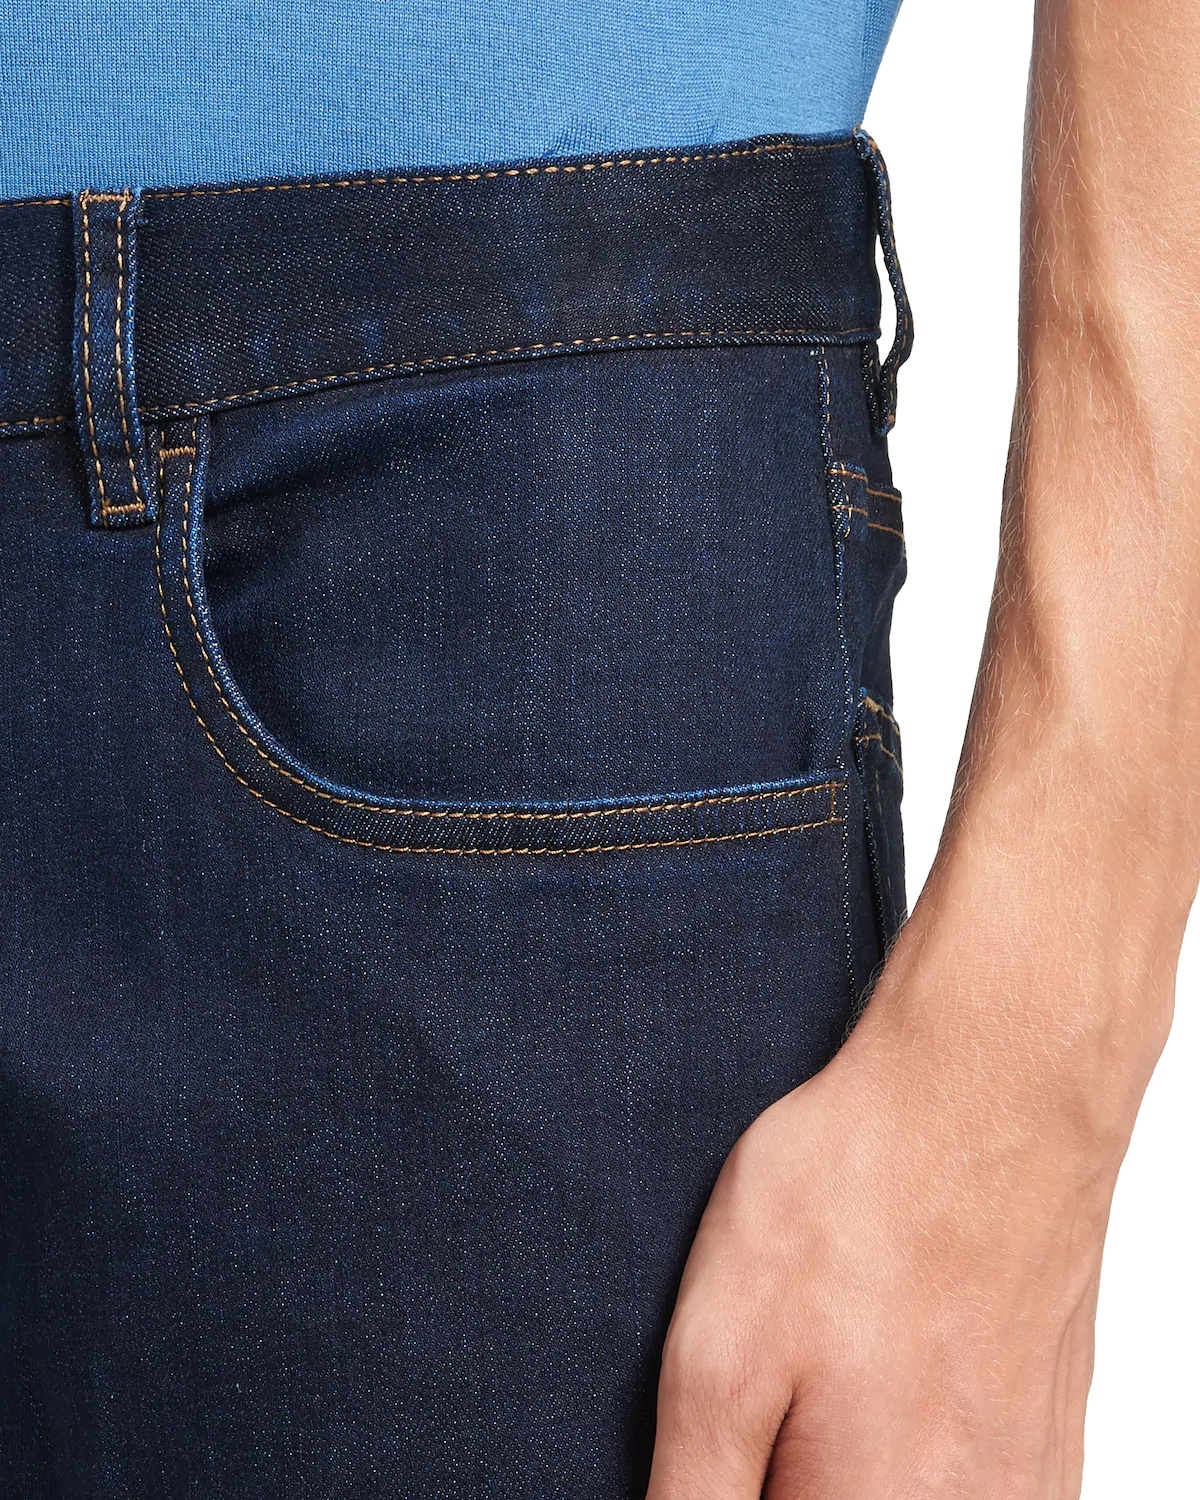 New Stretch Denim jeans - 5